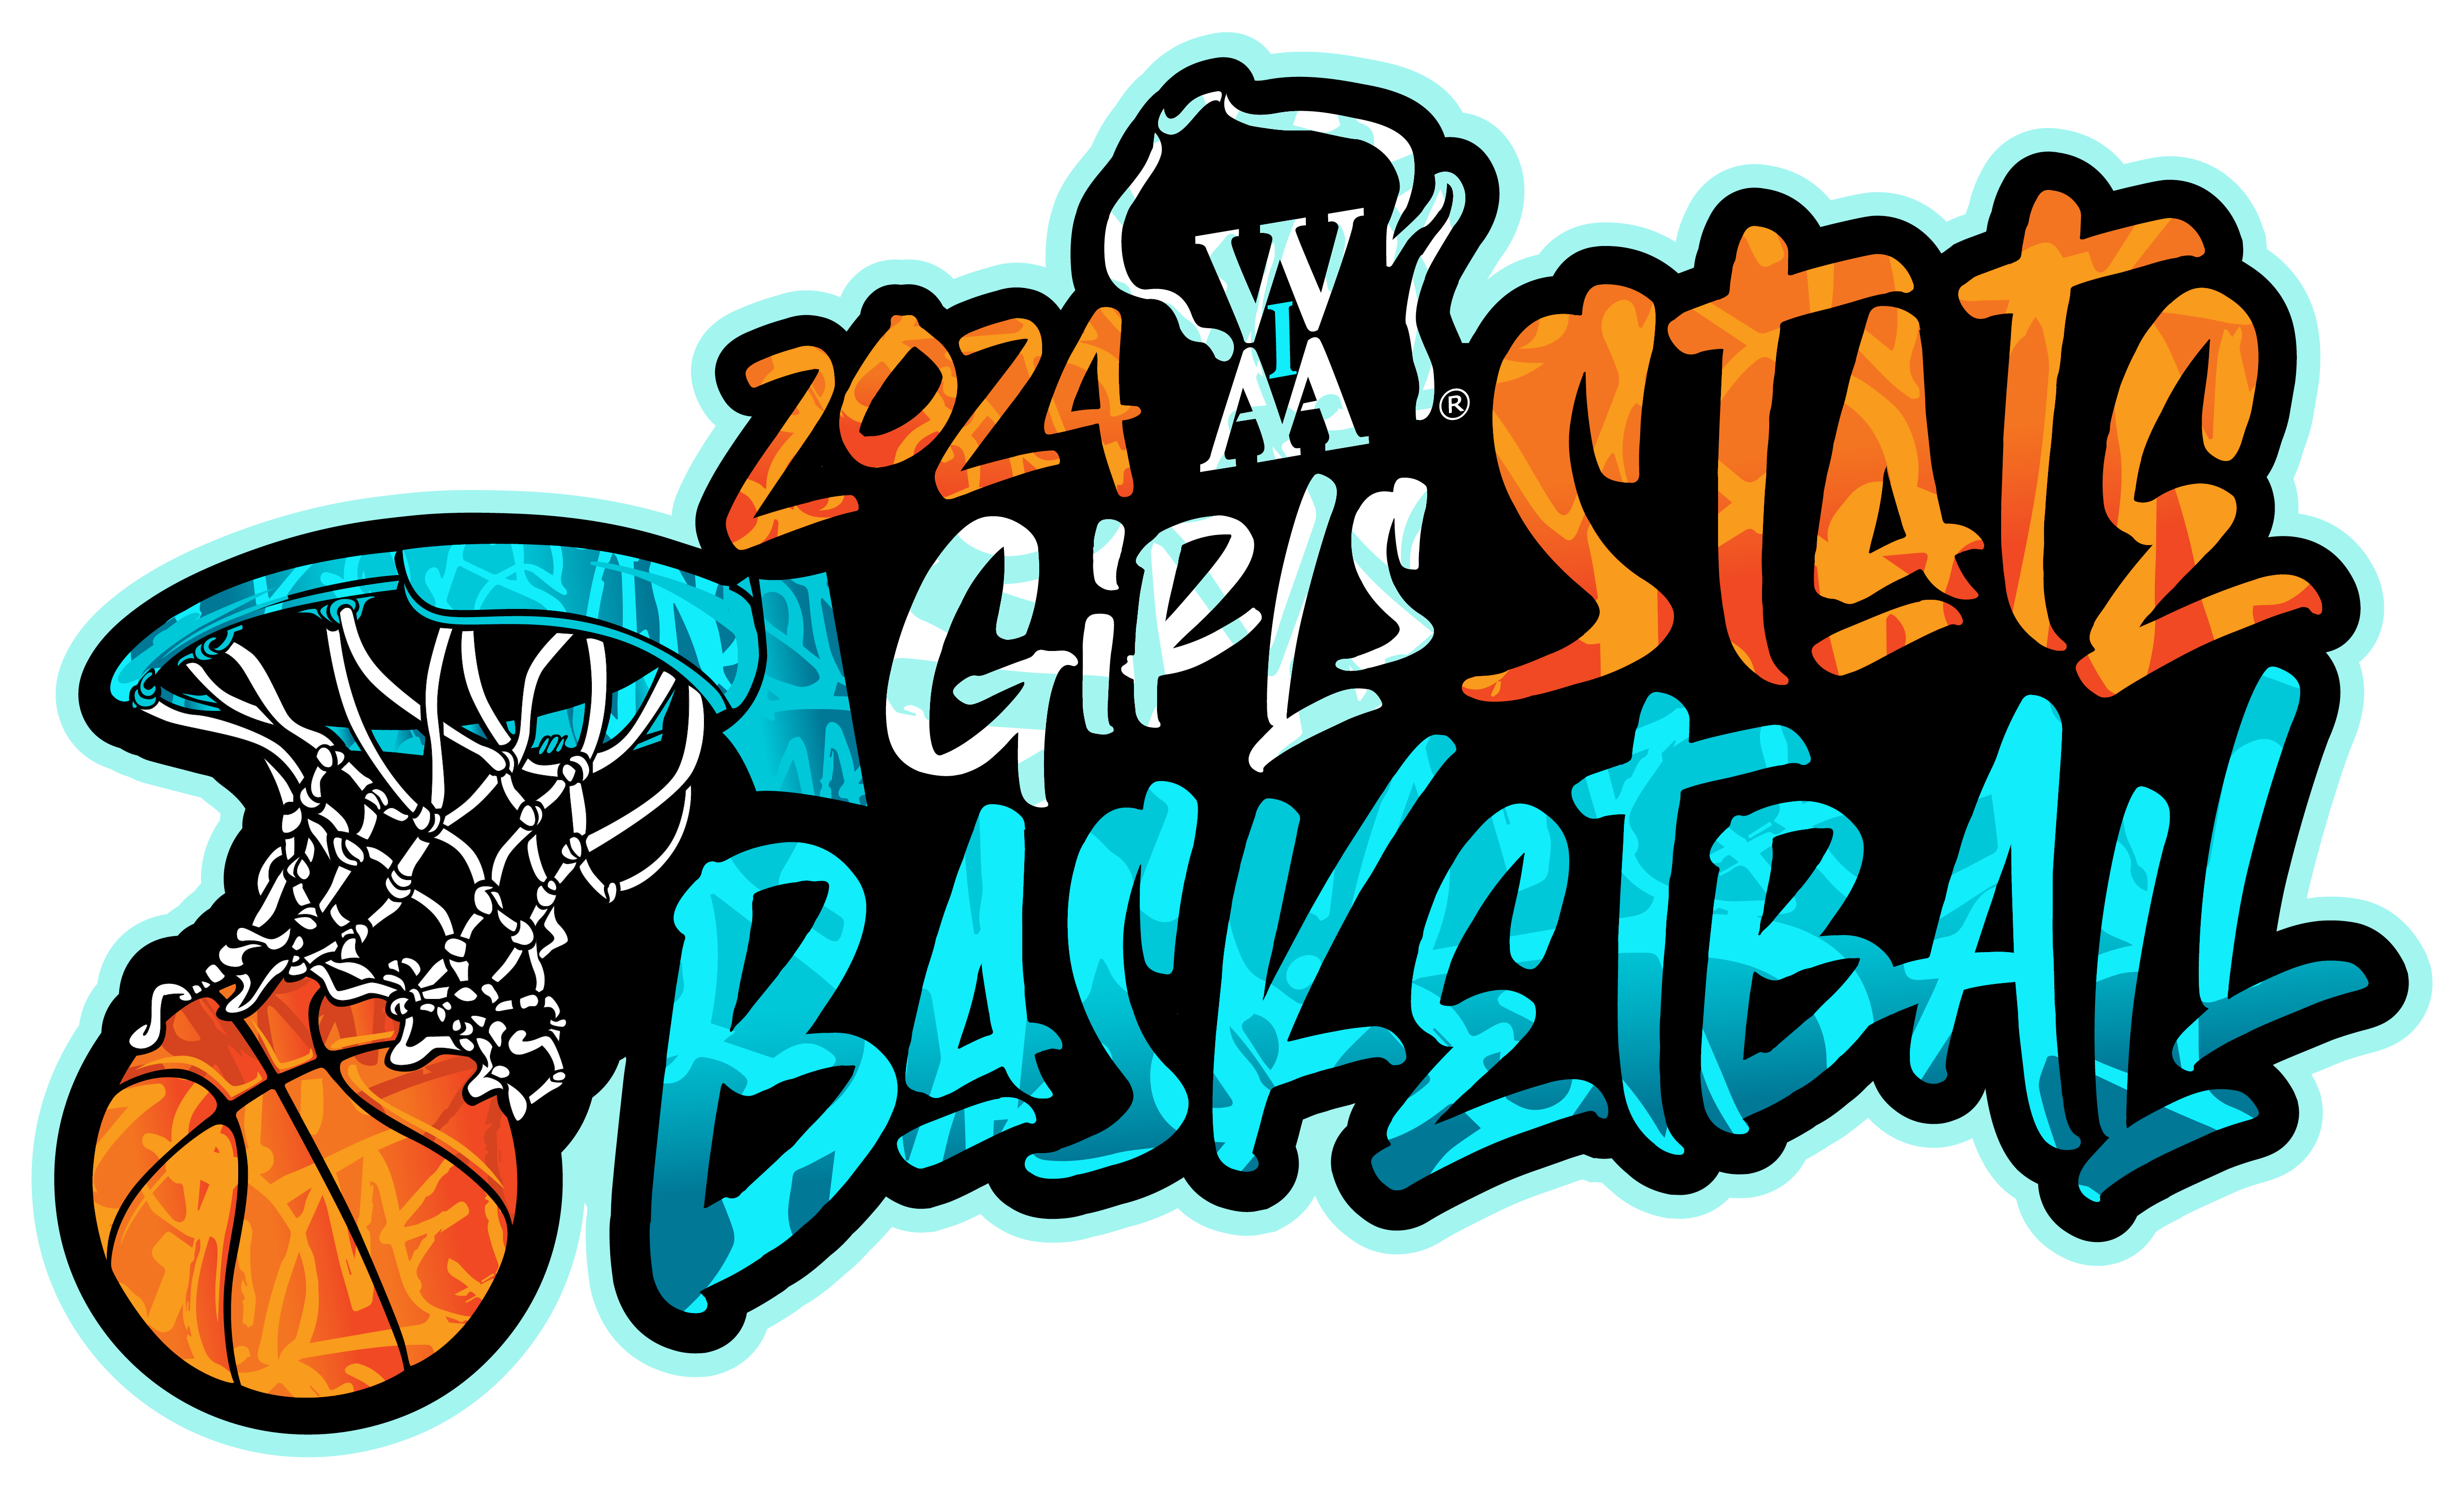 WIAA Girls Basketball Tournament Round 1 KFIZ NewsTalk 1450 AM